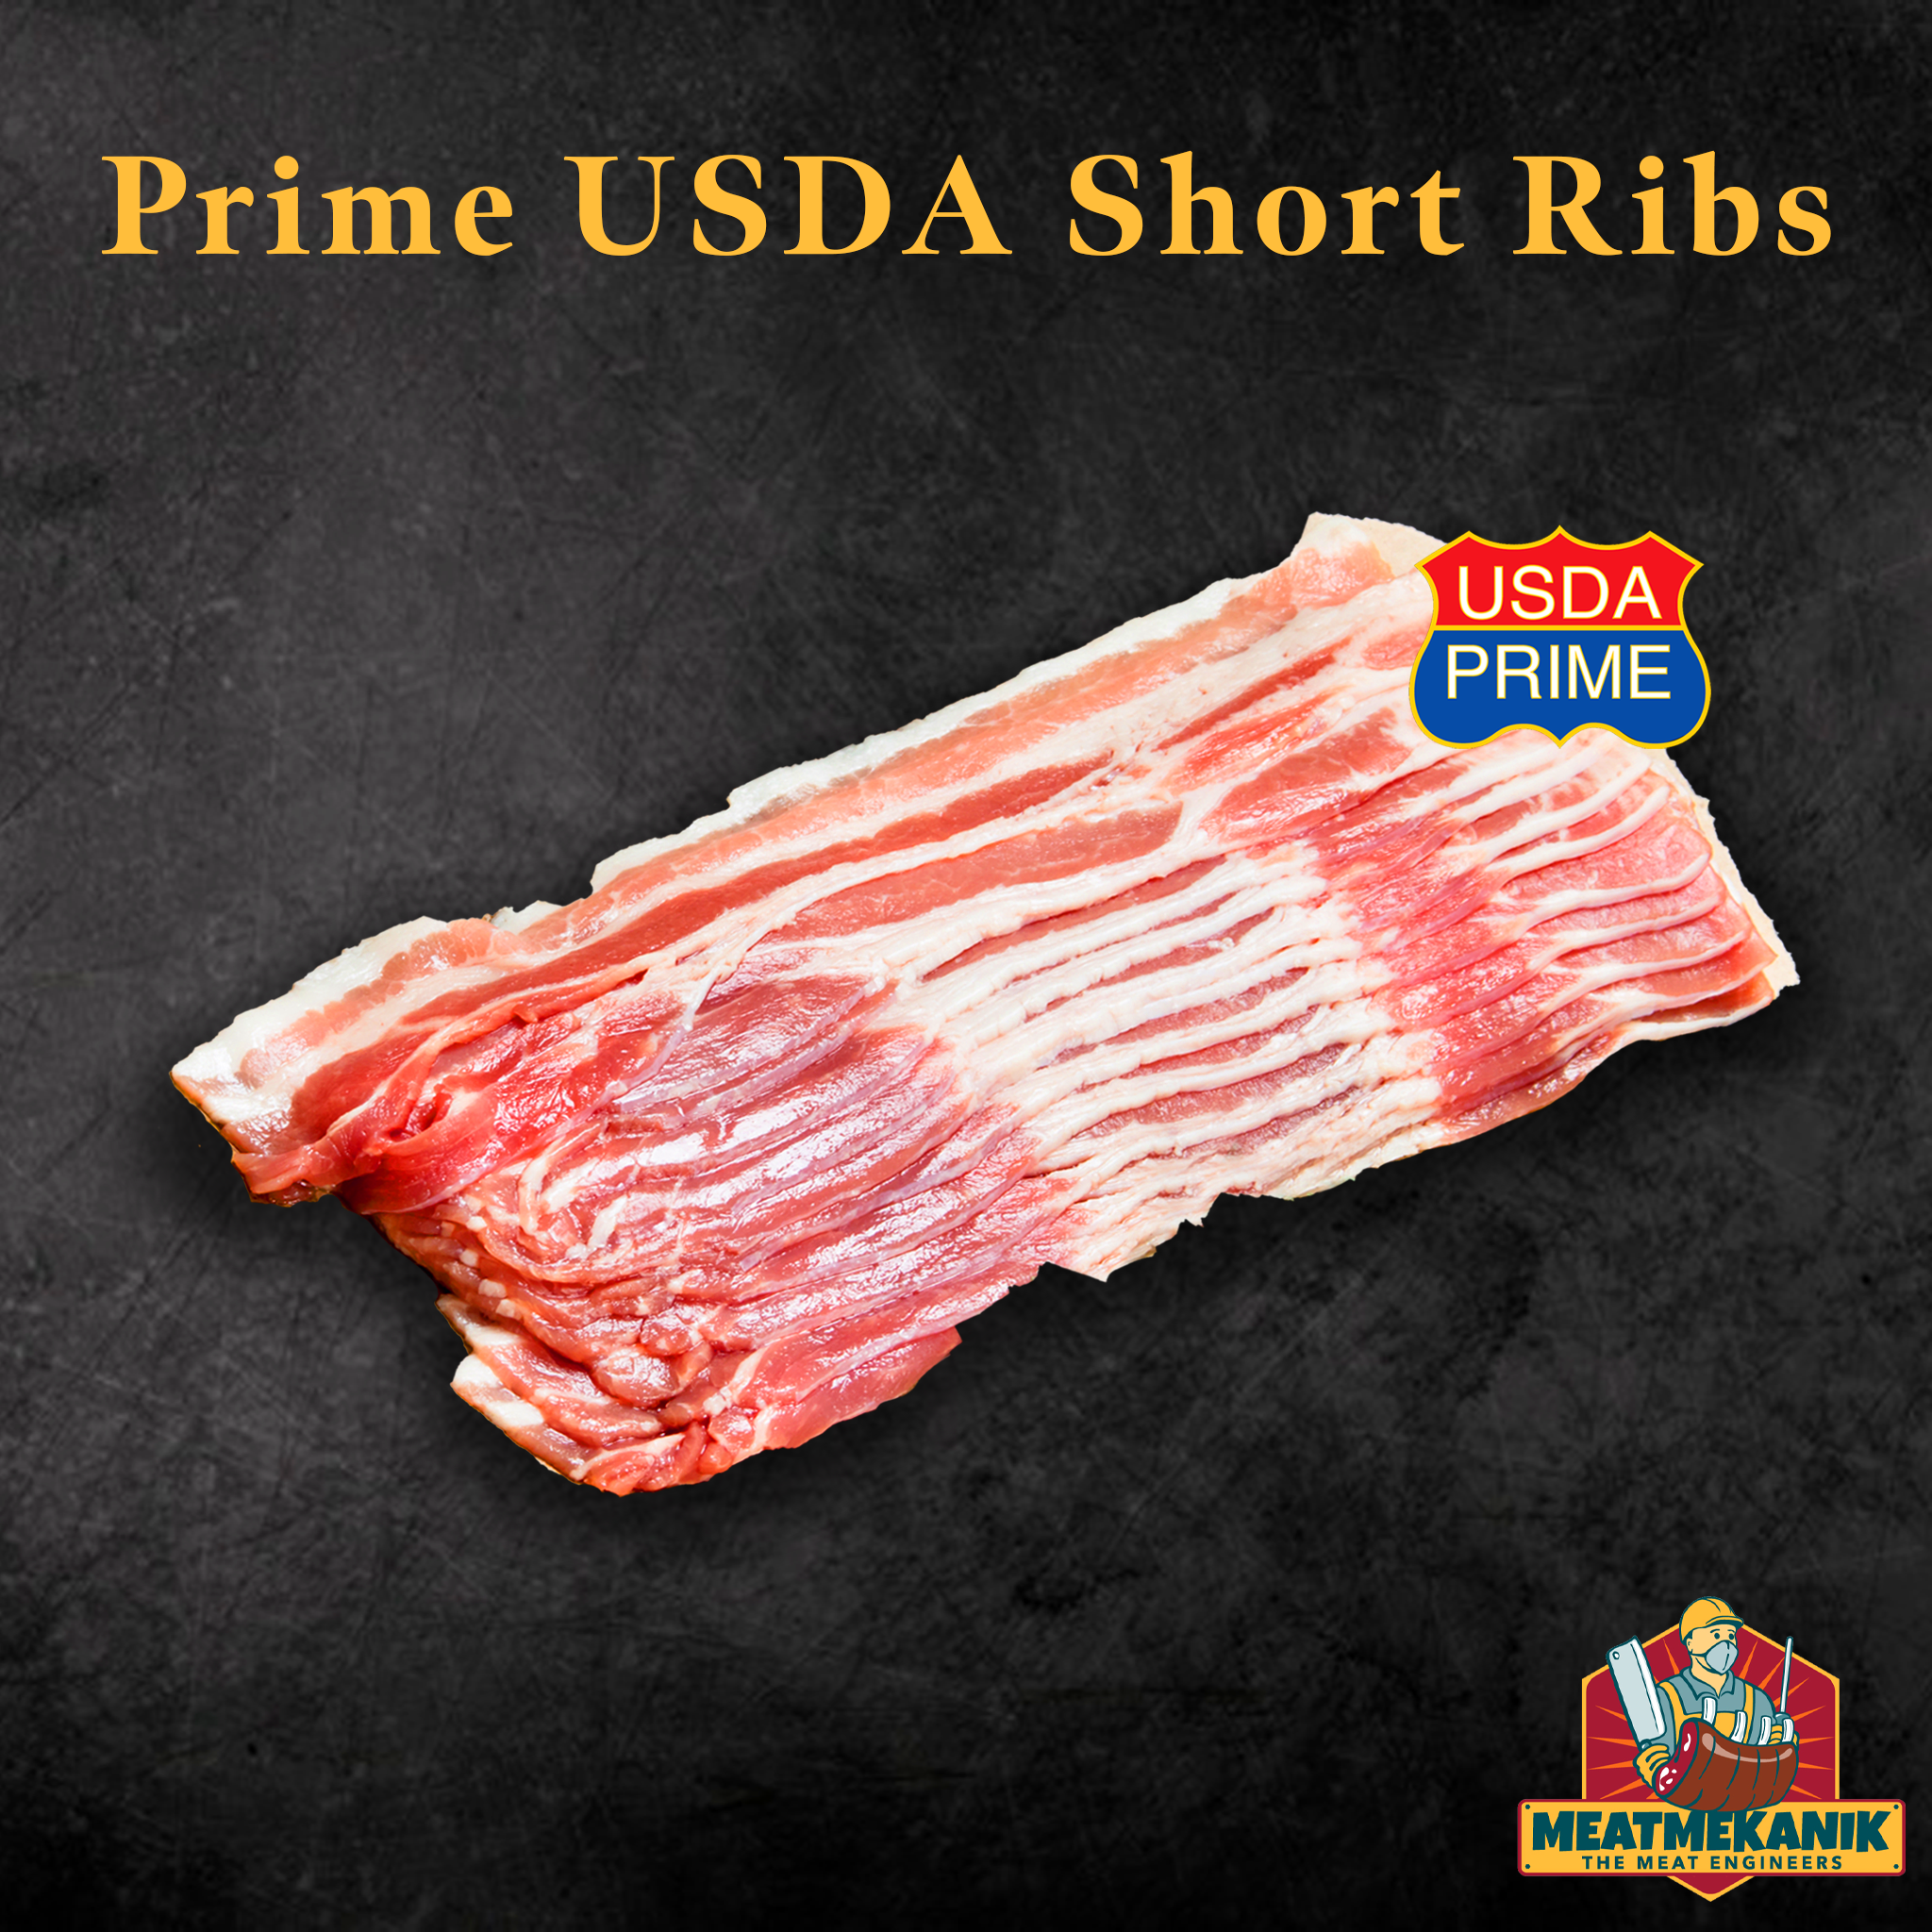 Prime USDA Short Ribs - Meat Mekanik